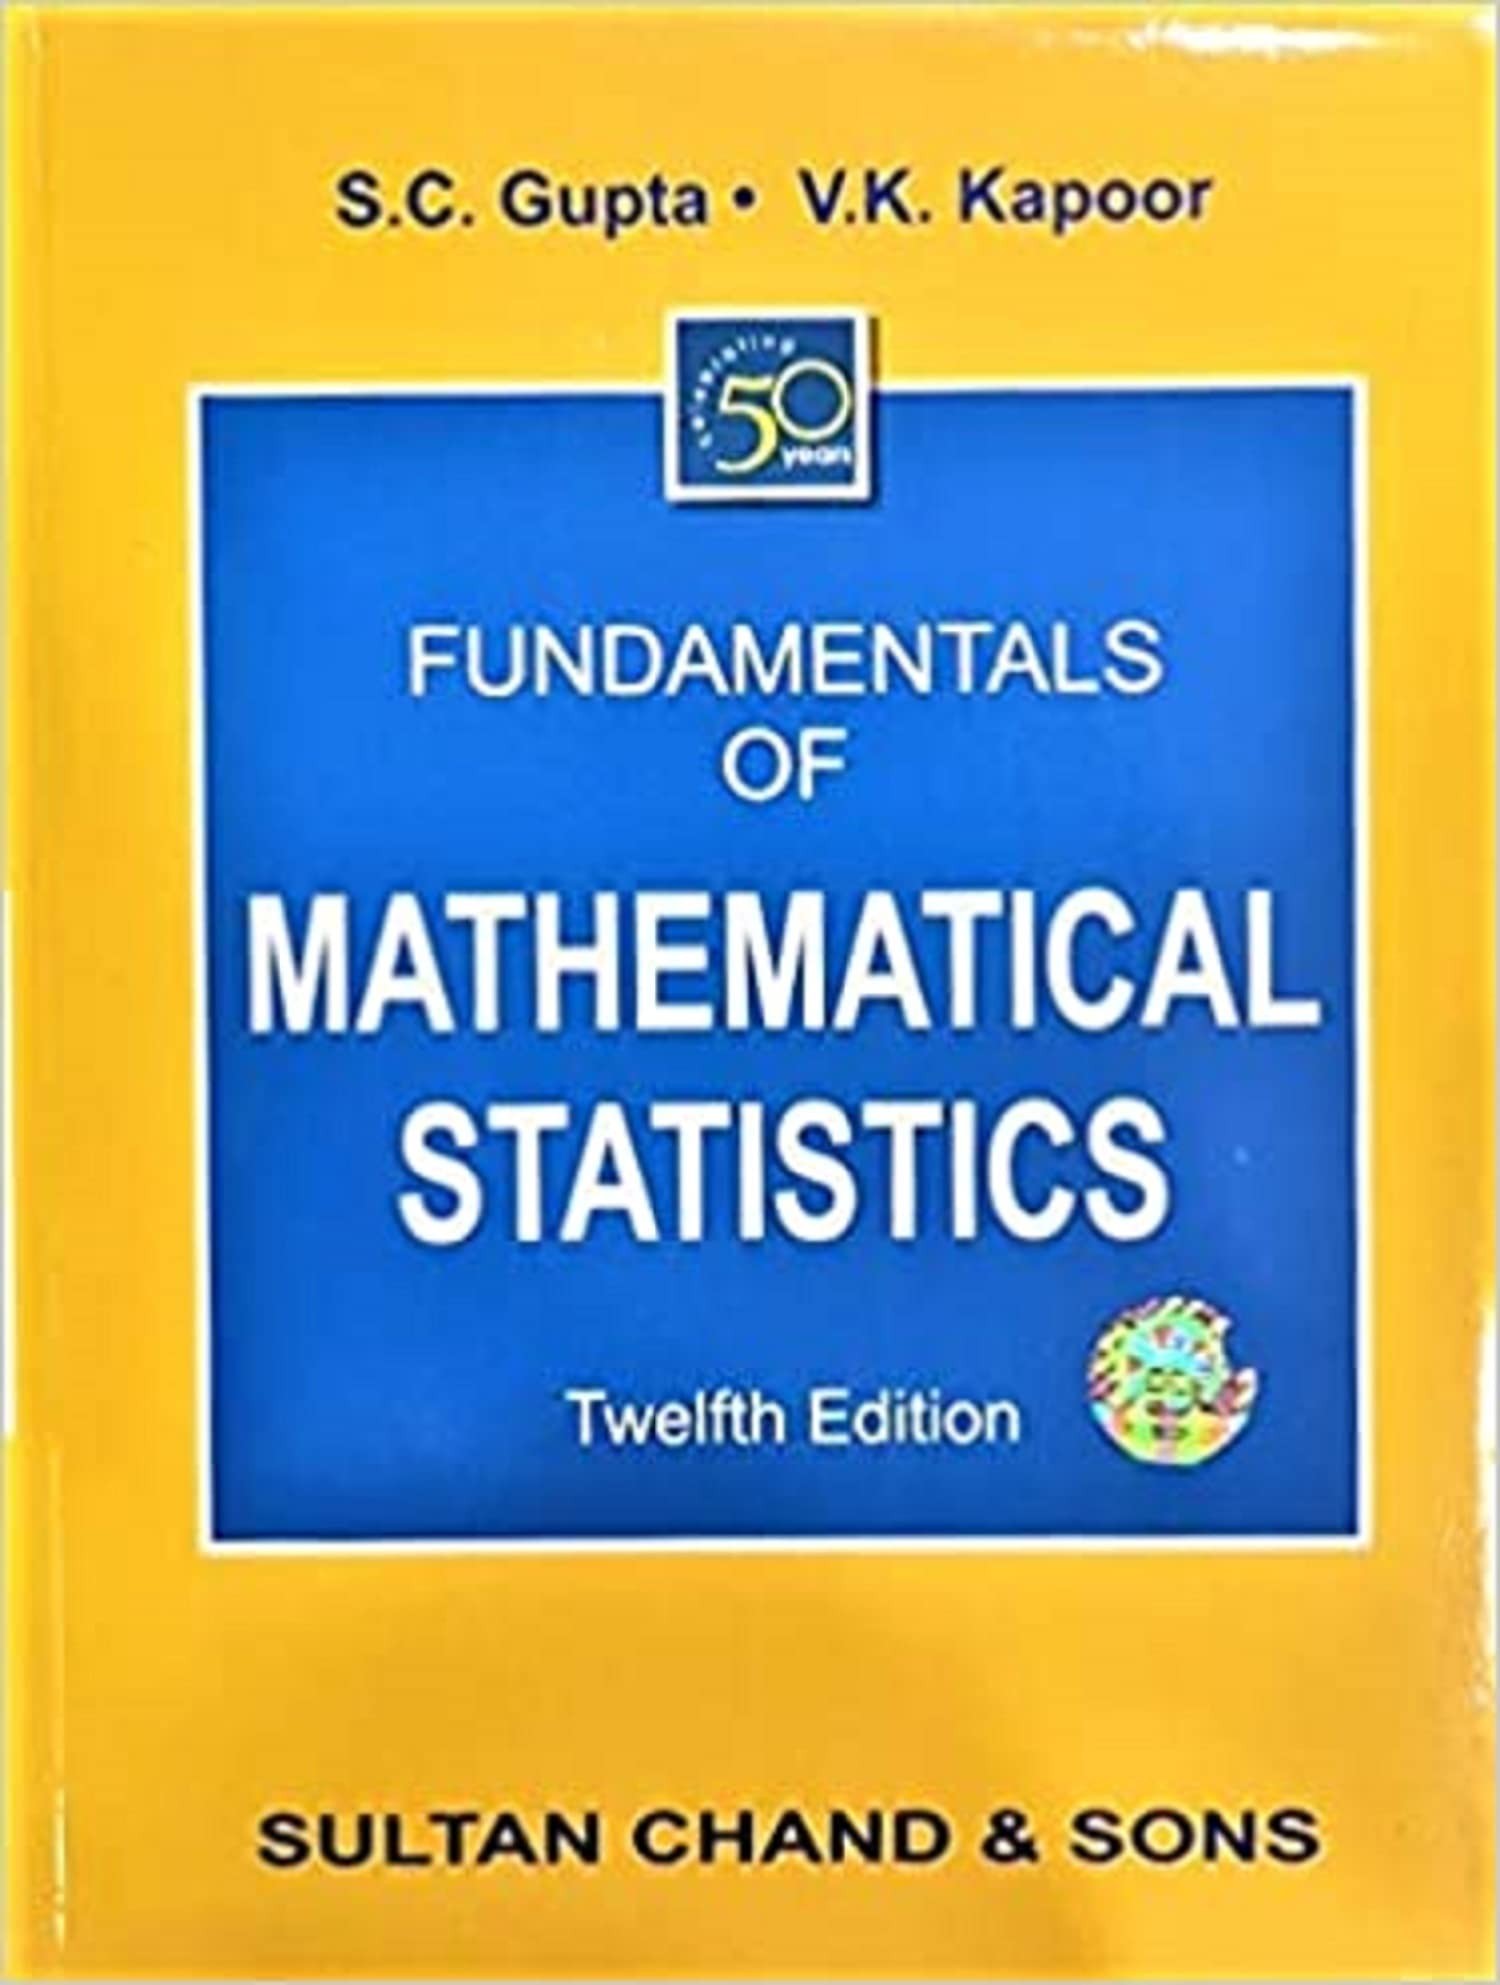 Fundamentals of Mathematical Statistics: A Modern Approach